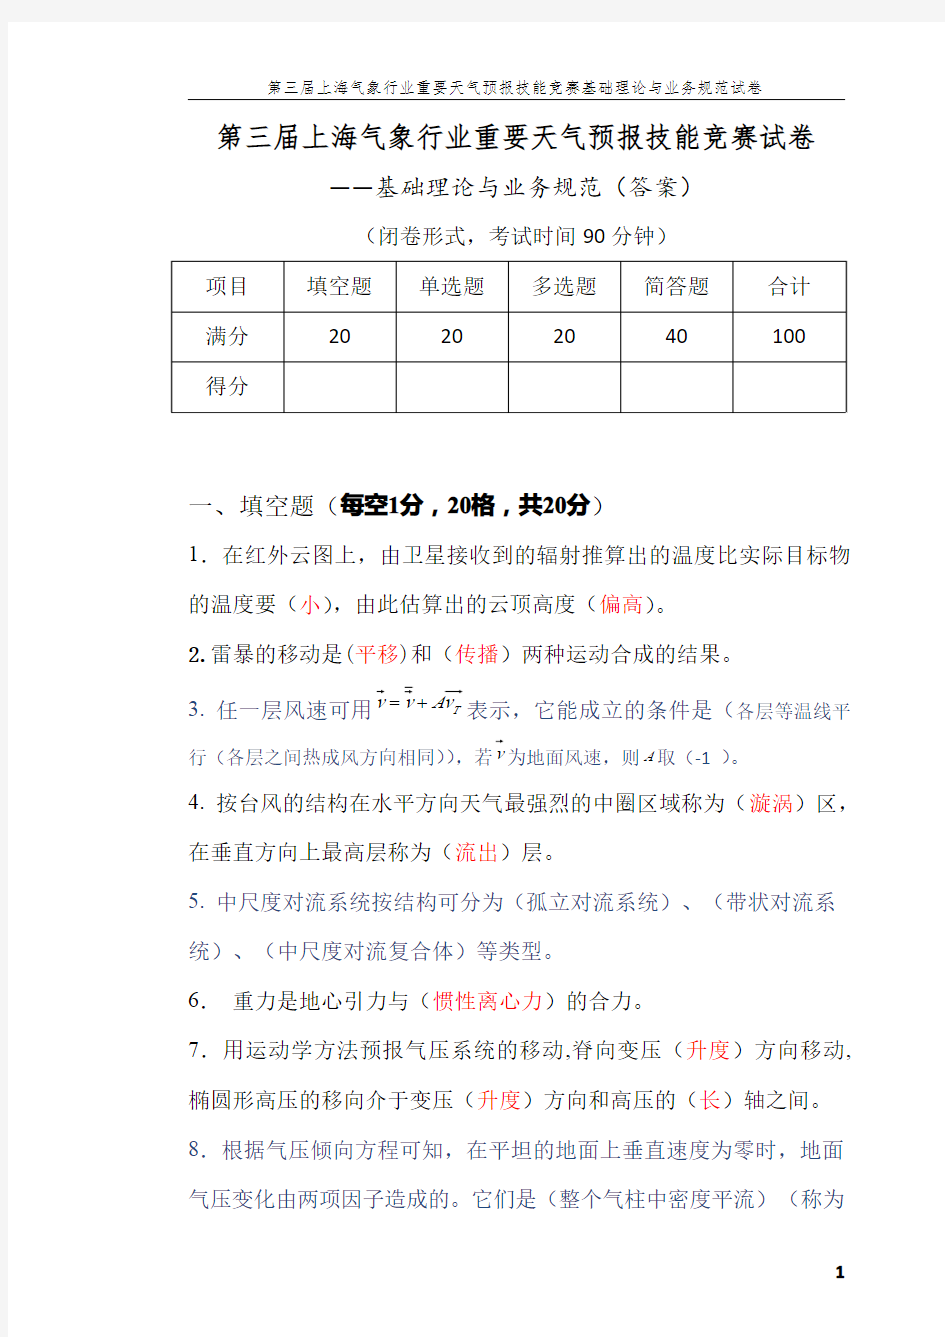 上海气象行业重要天气预报技能竞赛试卷理论试卷(答案)